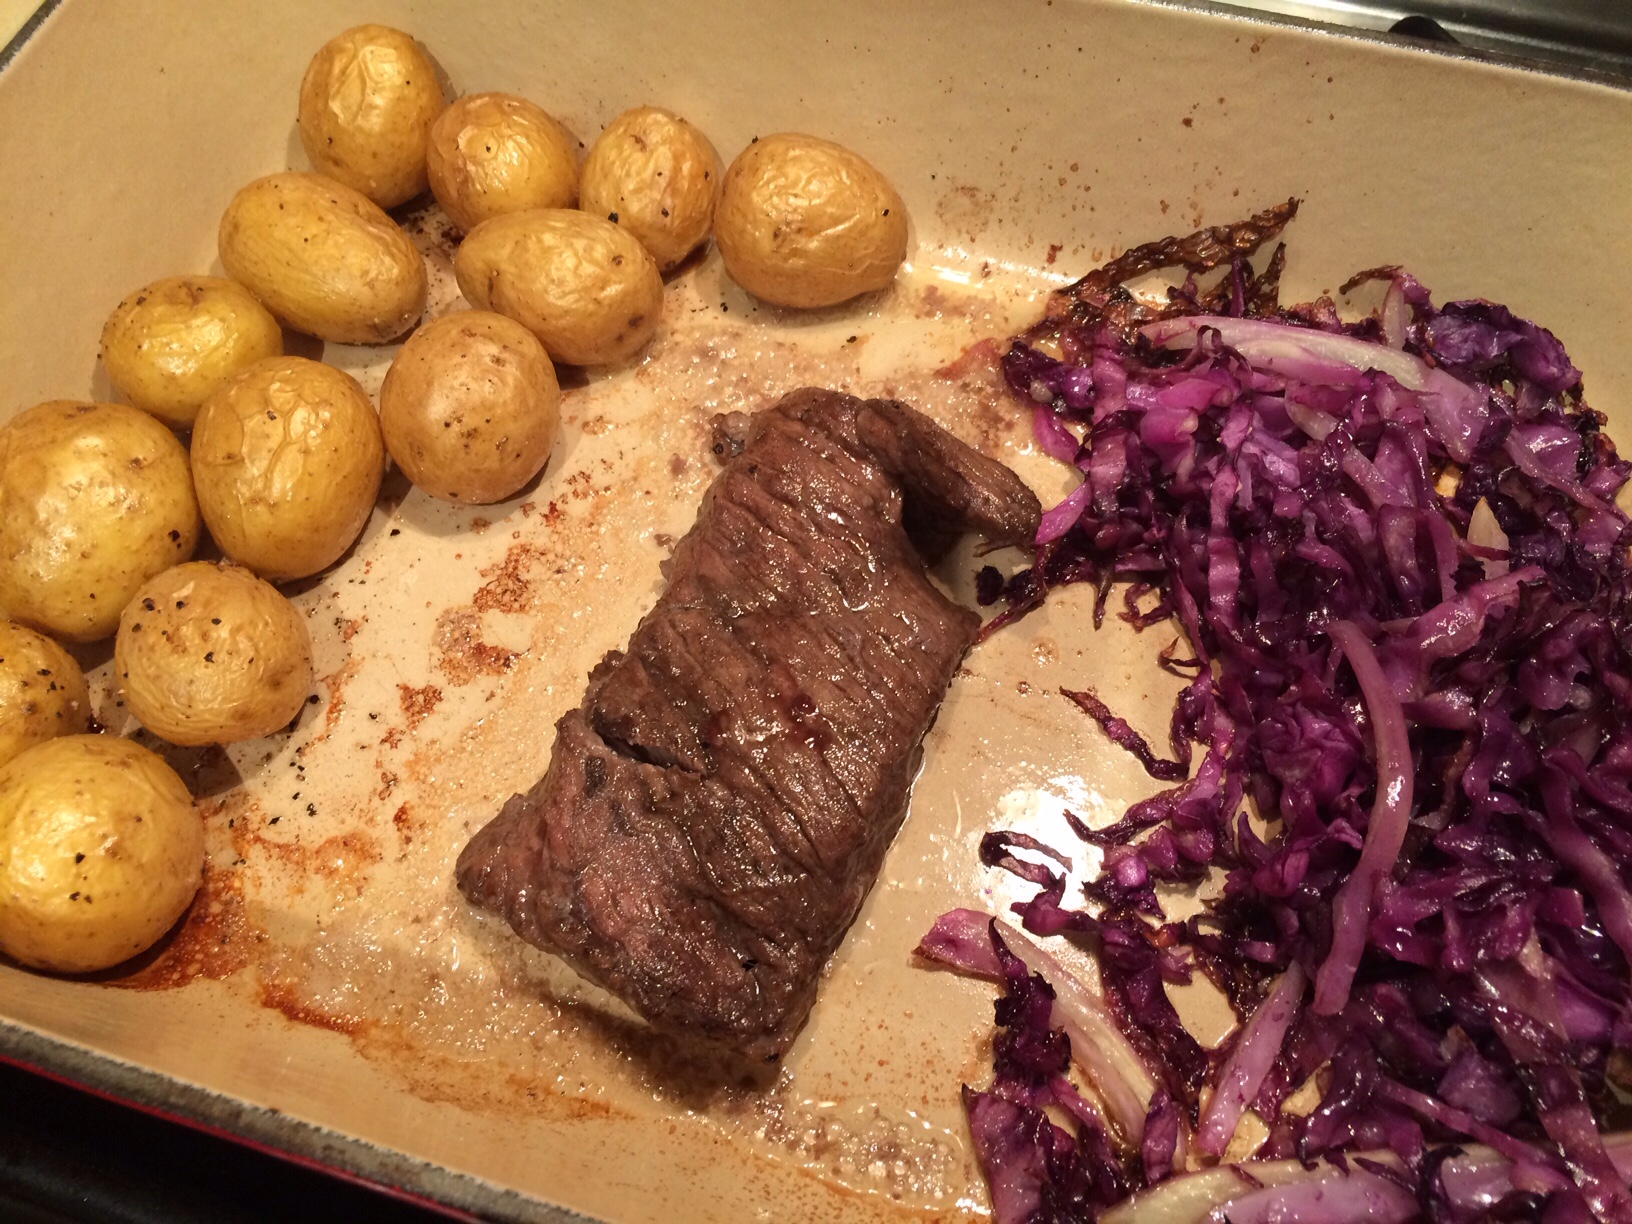 Oven roasted steak dinner